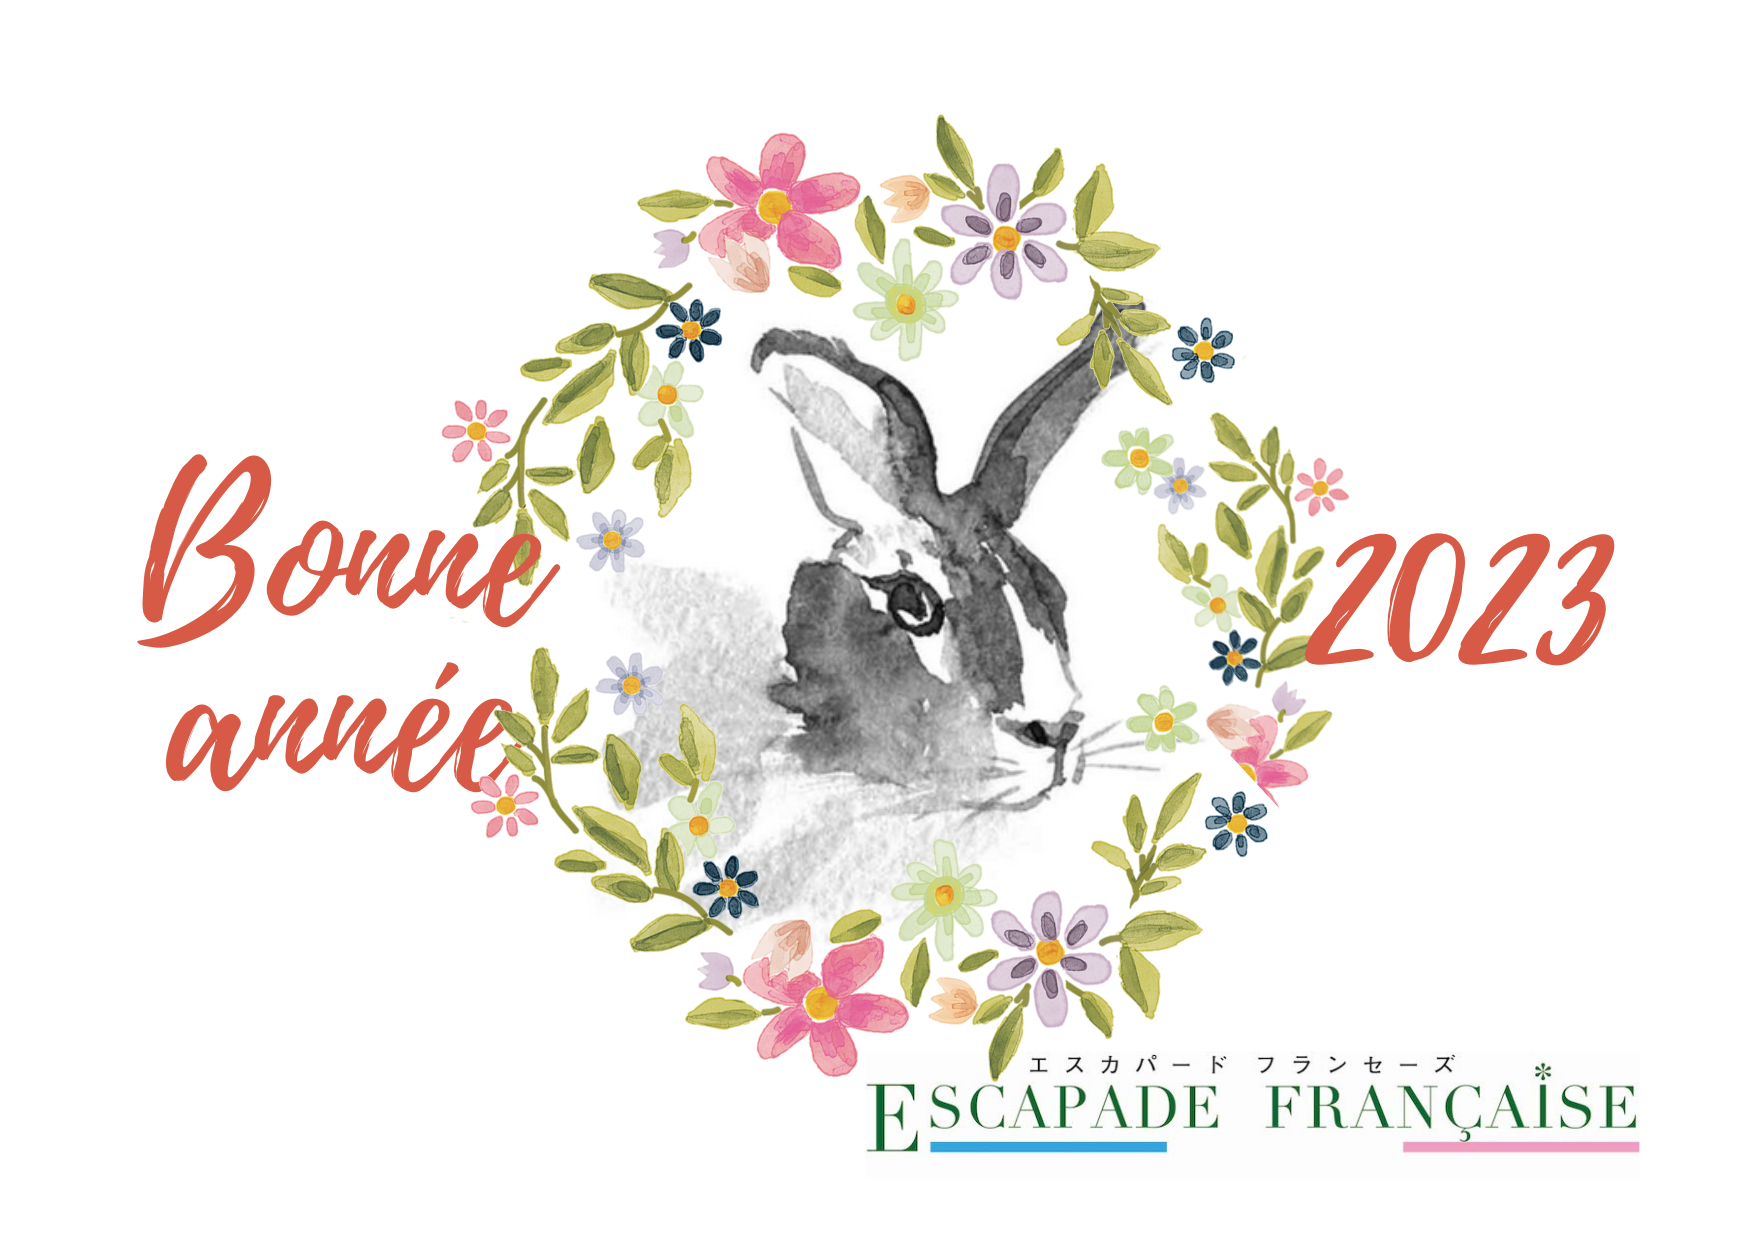 新年明けましておめでとうございます。Escapade française vous souhaite une belle année 2023.